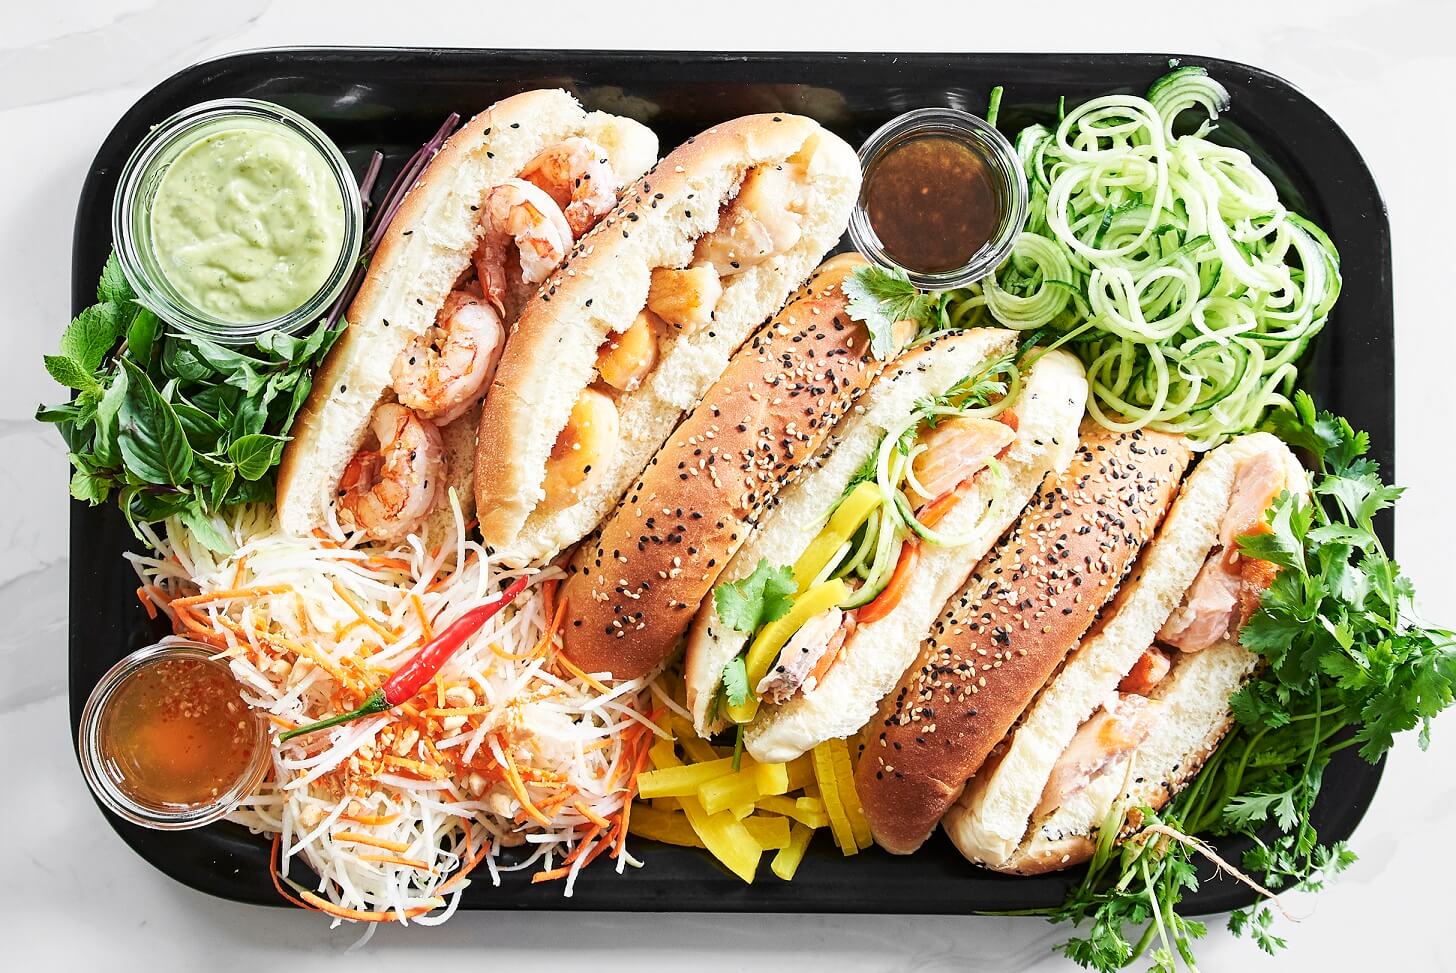 2e vie | sandwich vietnamien Banh mi | Chic Frigo Sans Fric